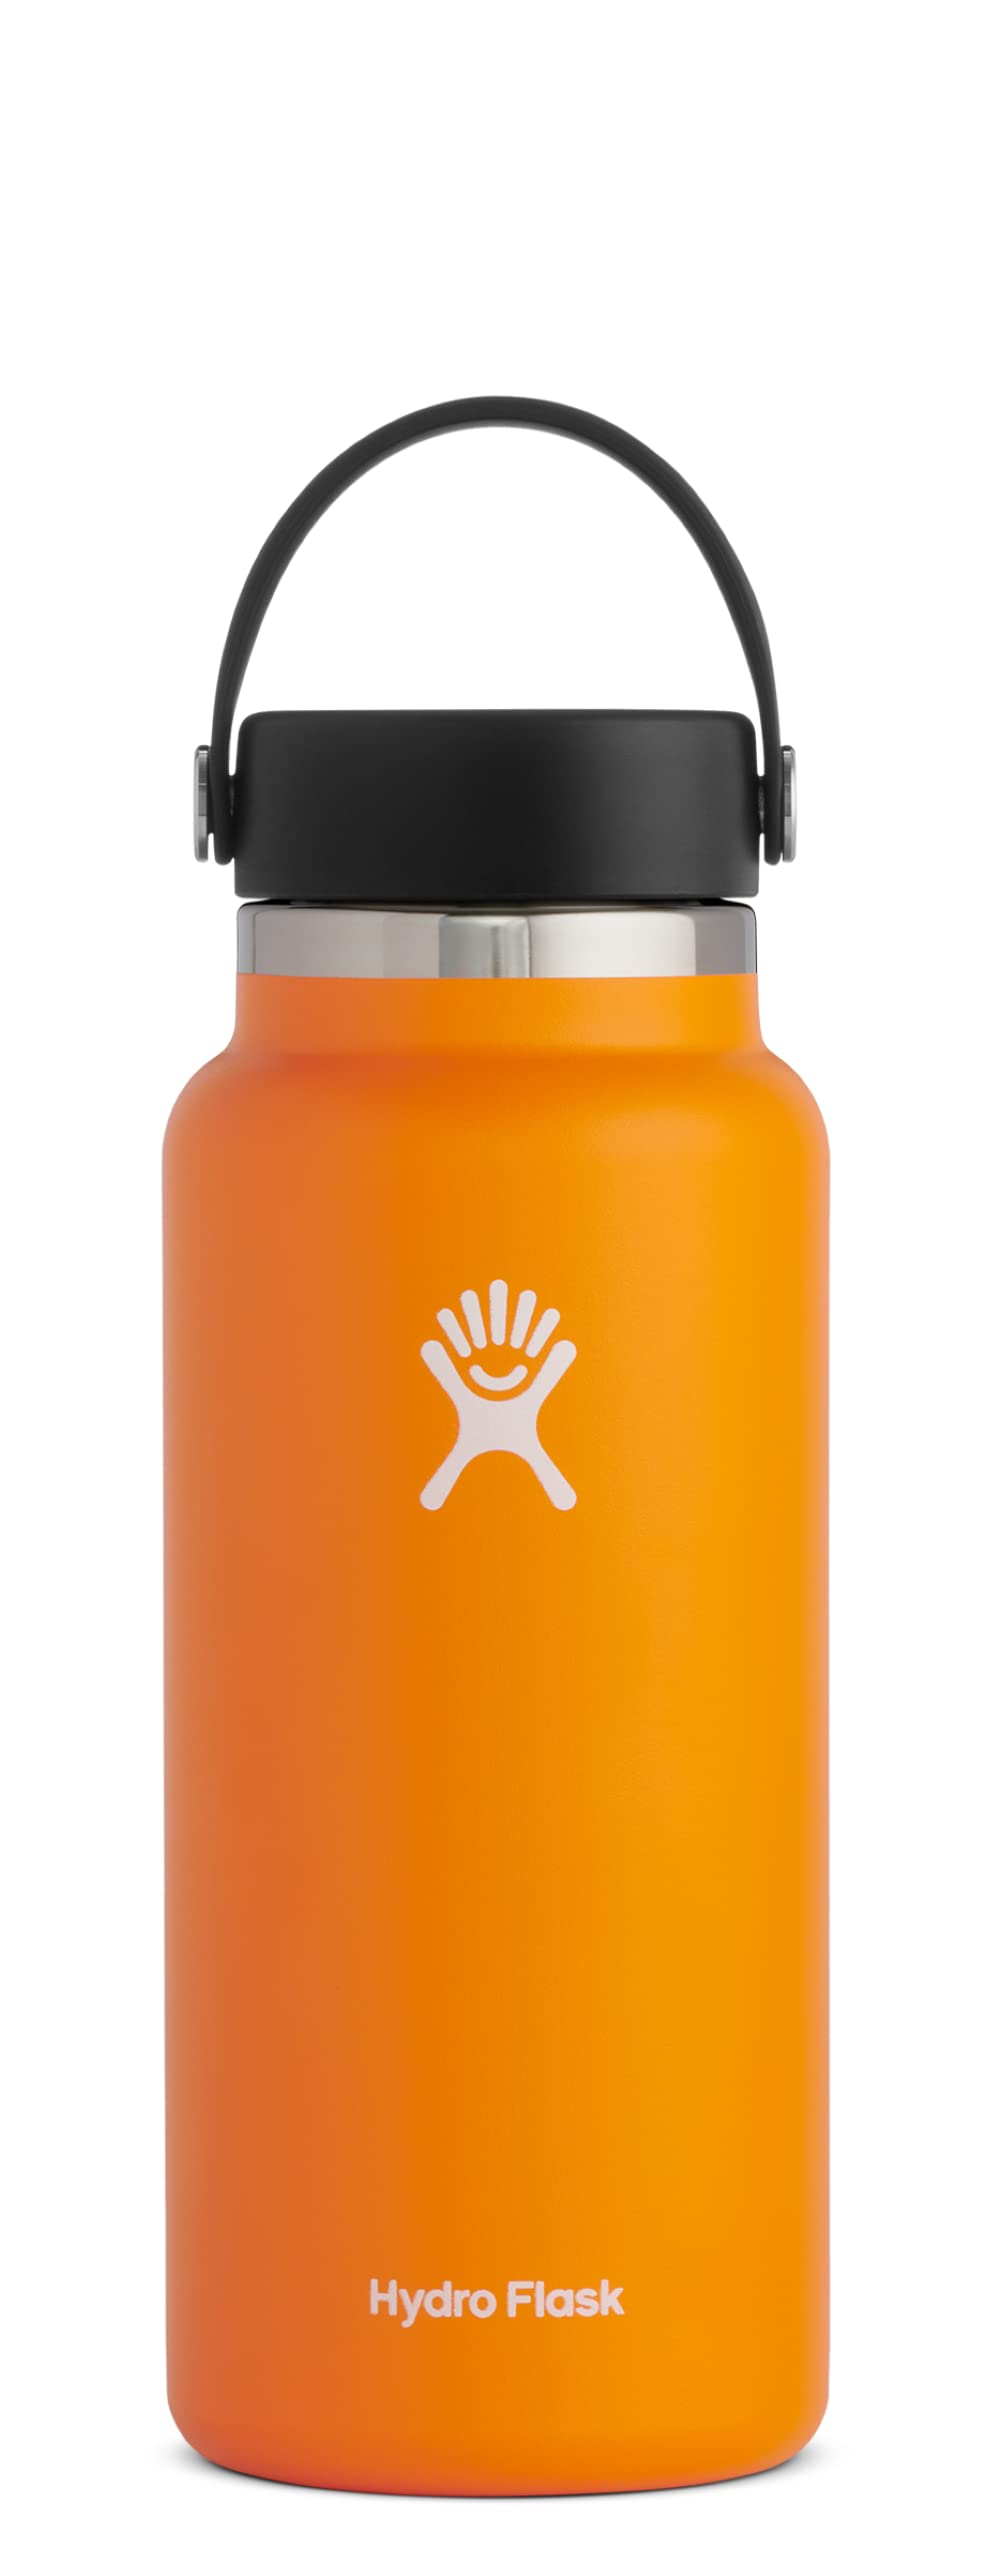 Hydro Flask زجاجة واسعة الفم مع غطاء فليكس